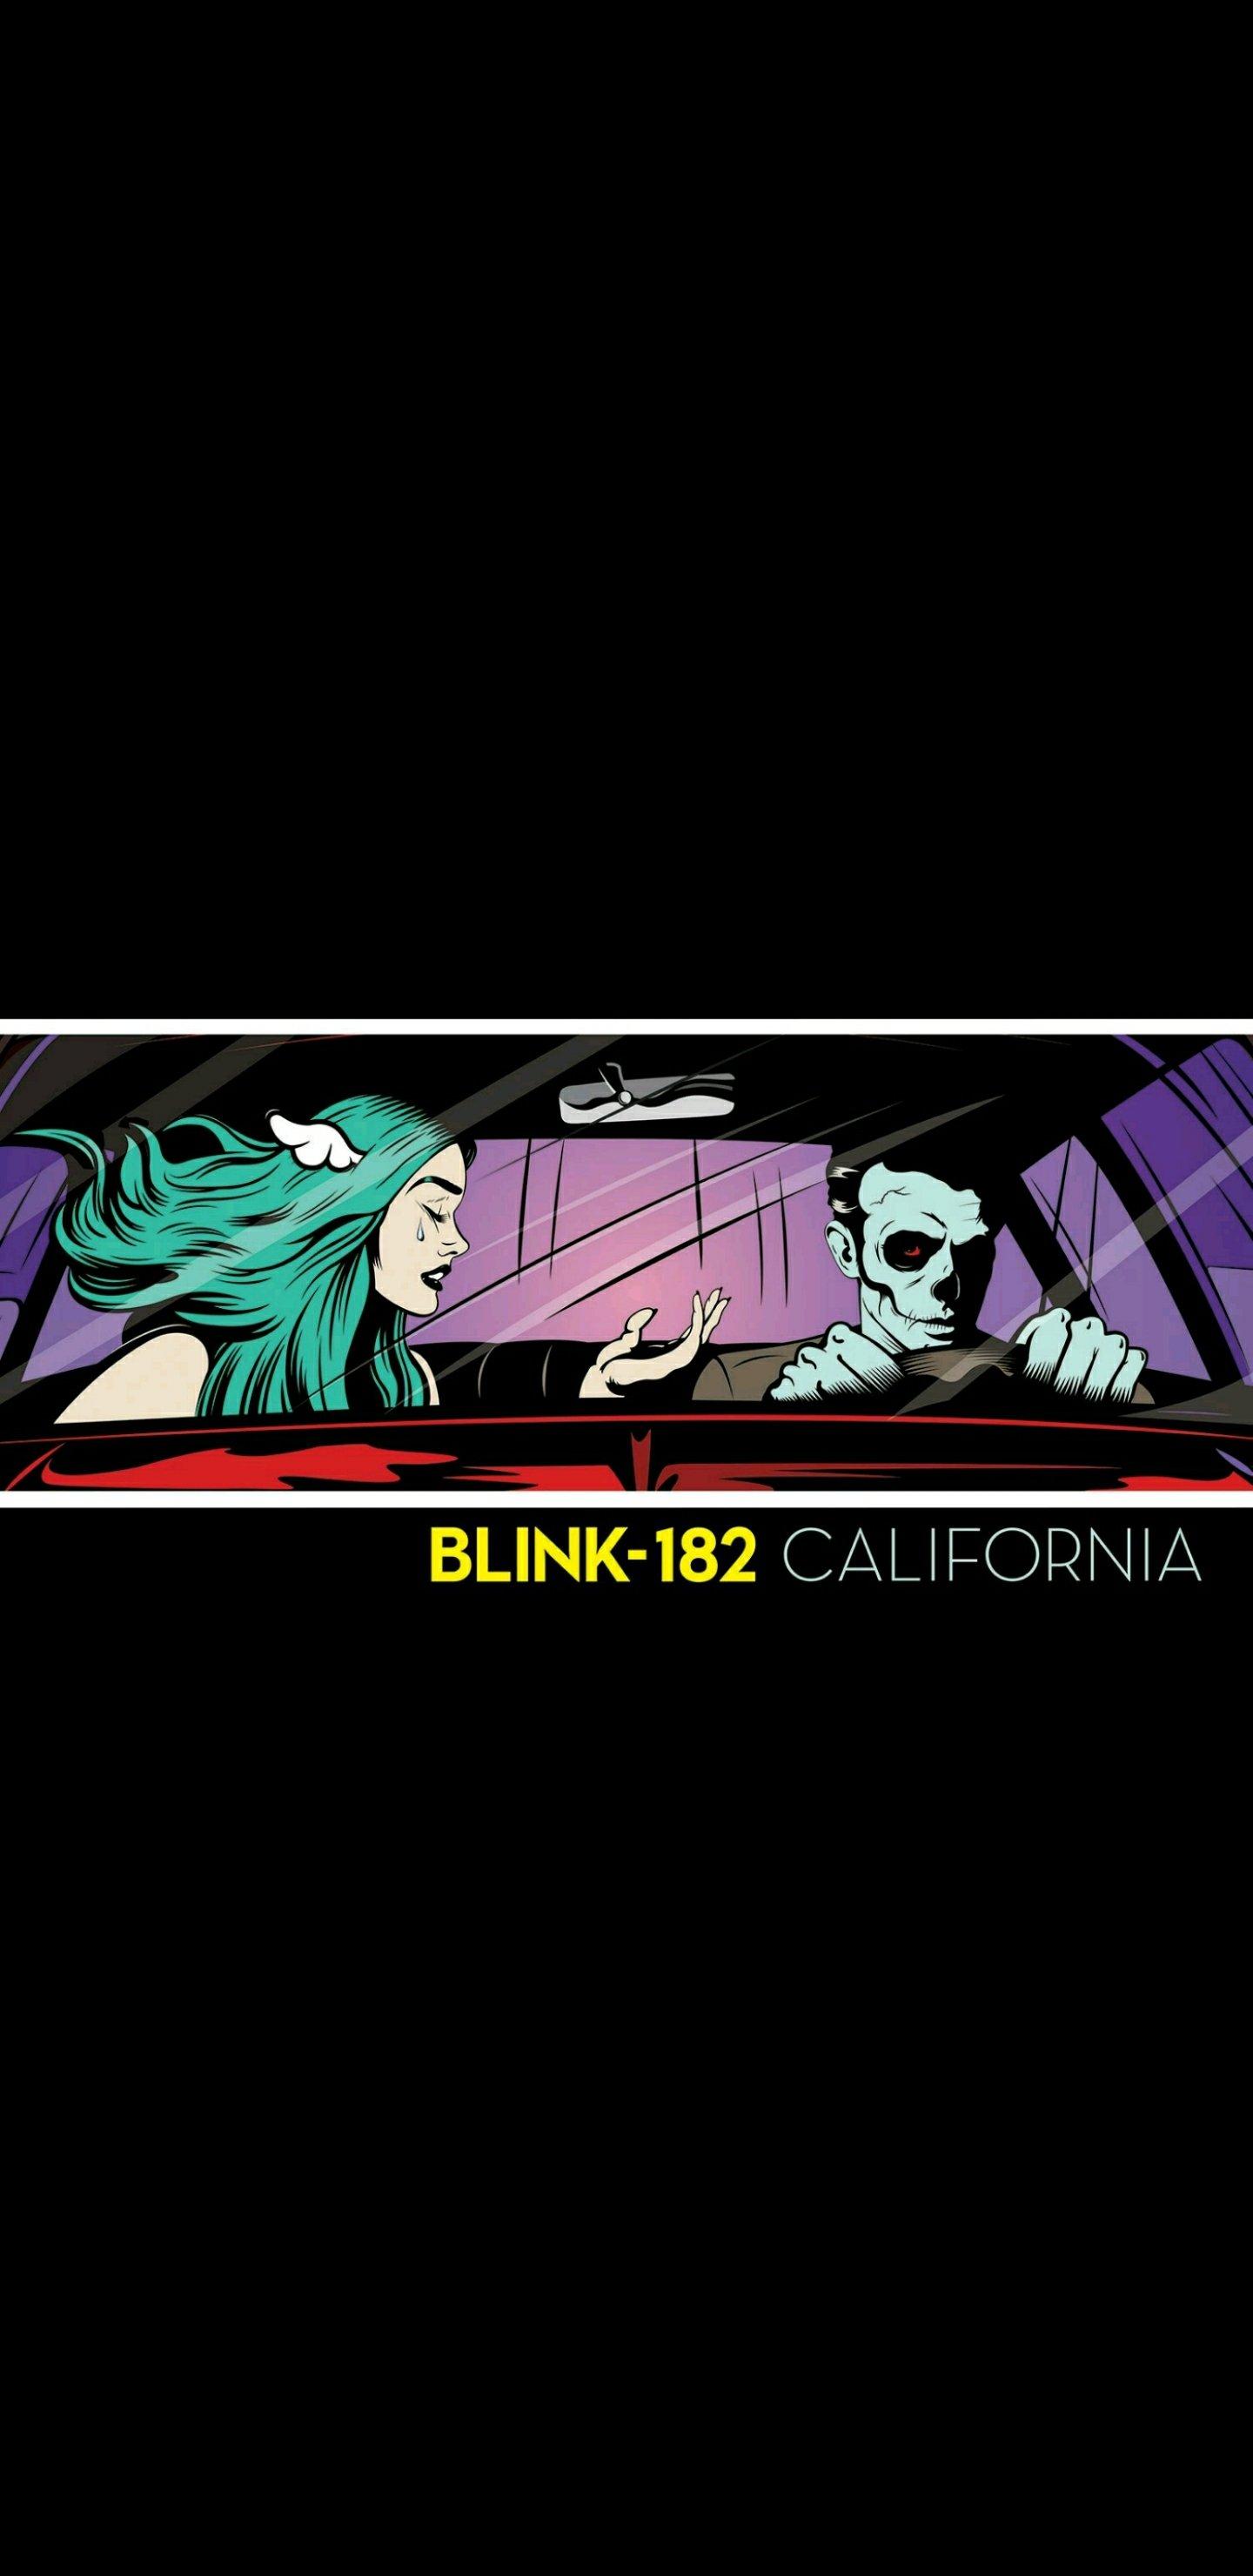 Blink 182 Album Art [1440x2960]